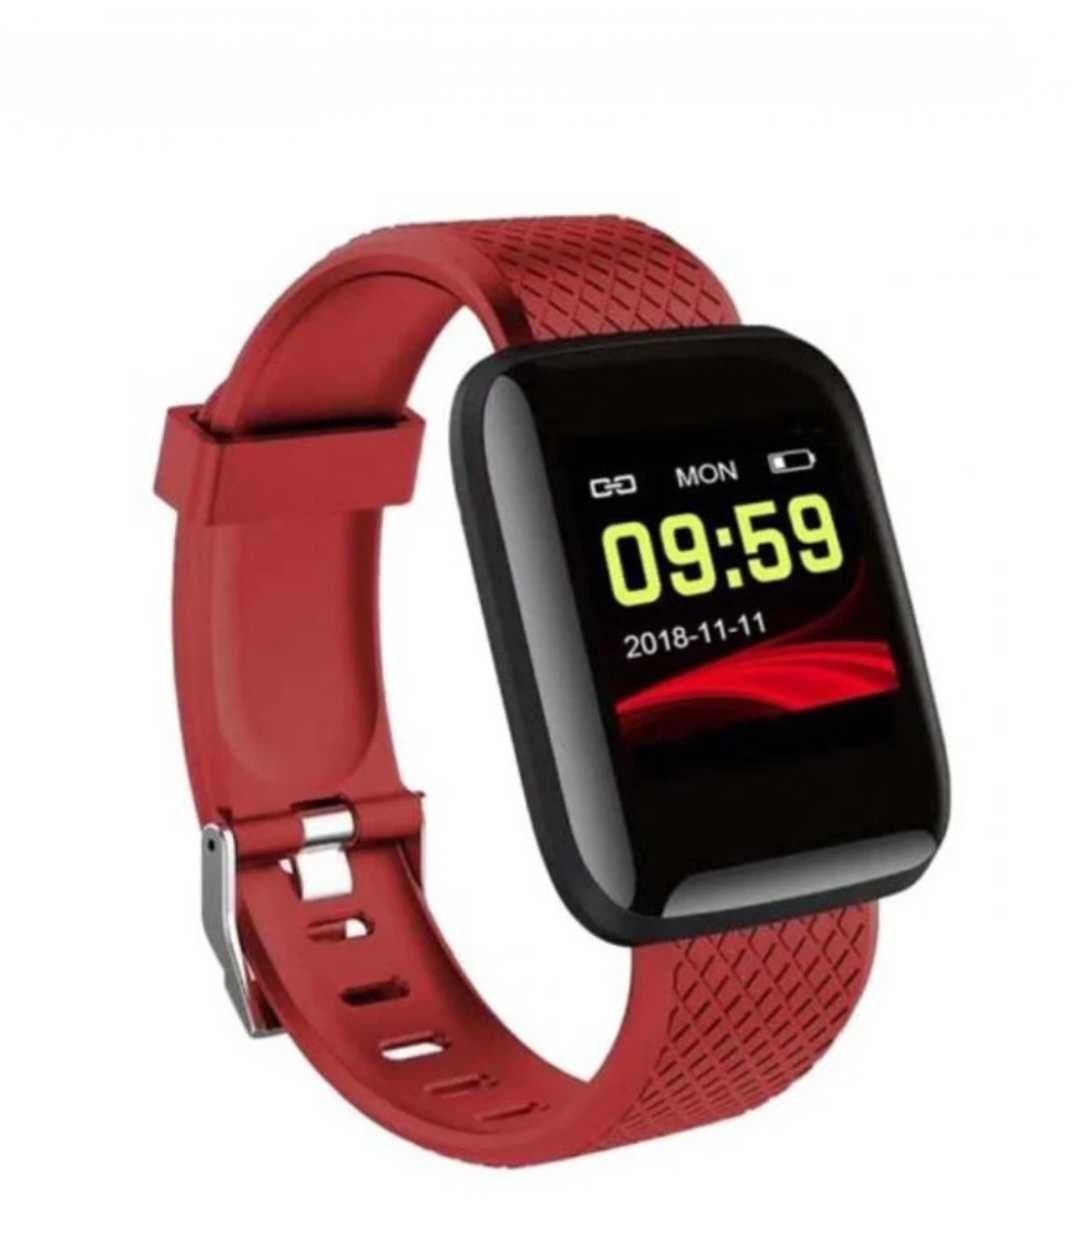 Smart watch bluetooth. Zeci de funcții fitness&sănătate. Roșu. Pătrat.